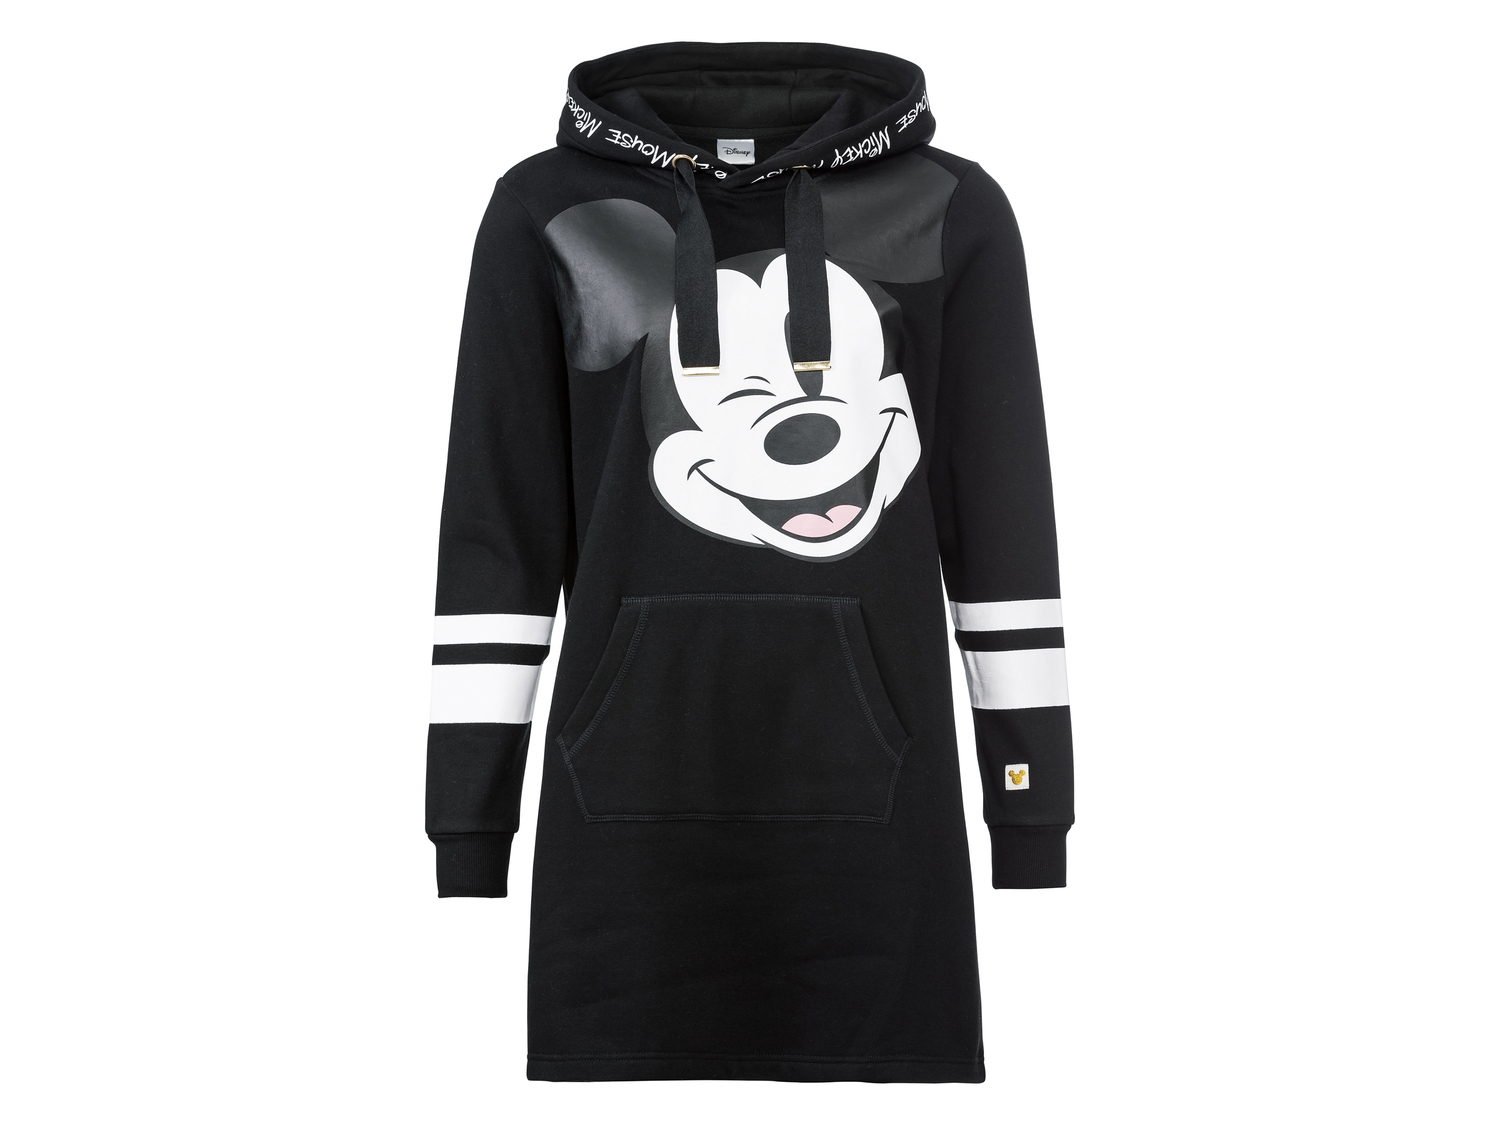 Vestito-felpa da donna Mickey Mouse, prezzo 14.99 € 
Taglie: S-L
Taglie disponibili

Caratteristiche ...